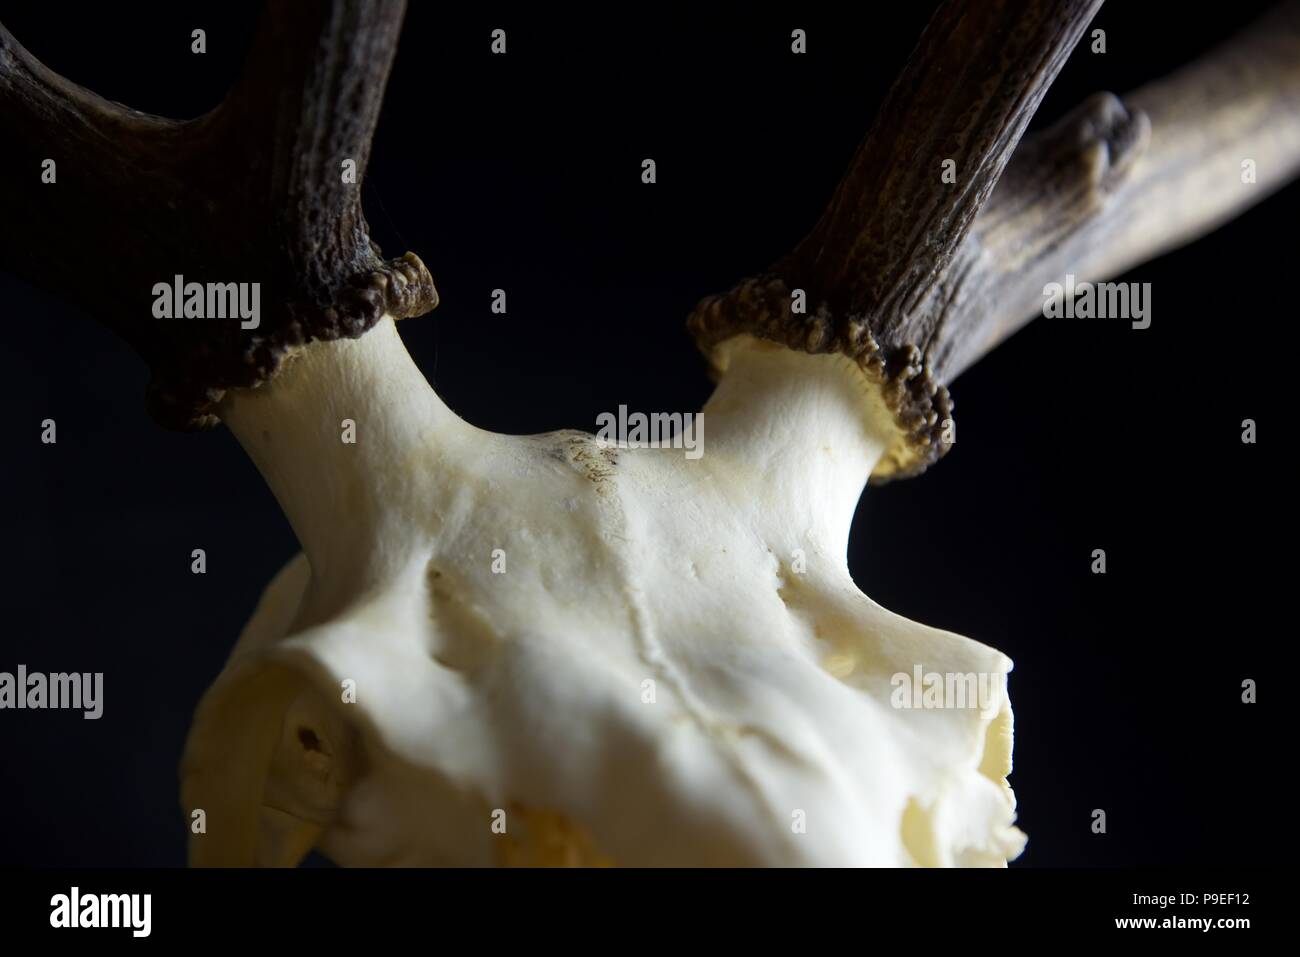 Deer skull: Abstrakte close up Fotografie der Details einer gebleichten Rotwild Schädel mit Hörner Stockfoto